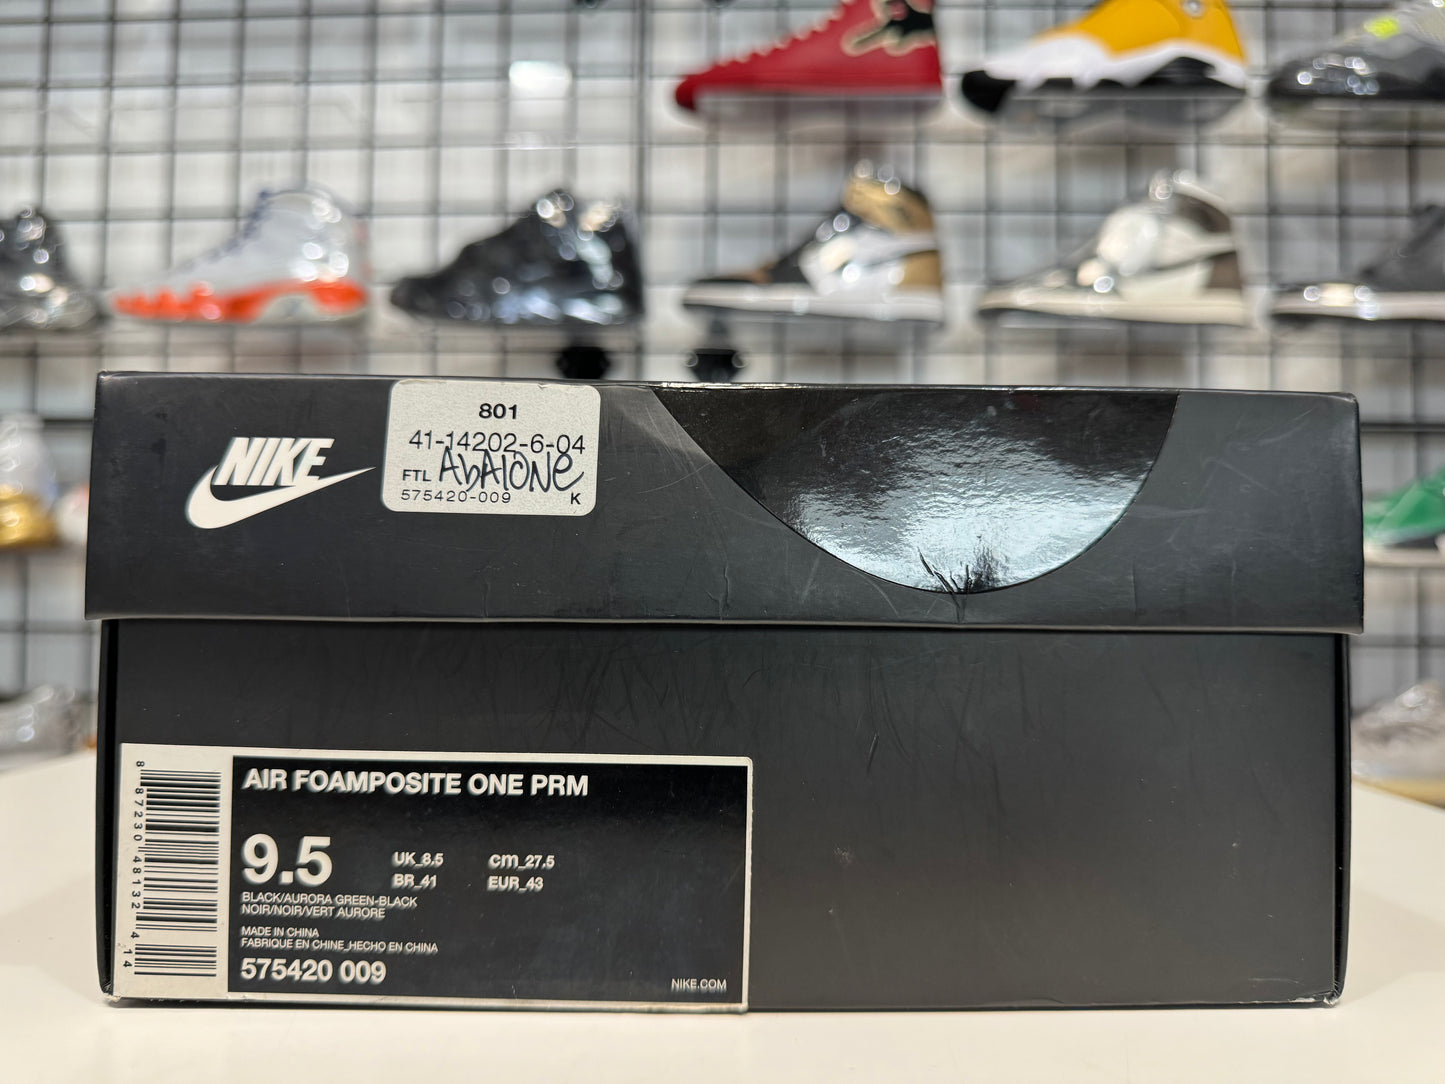 Nike Foamposite Abalone size 9.5